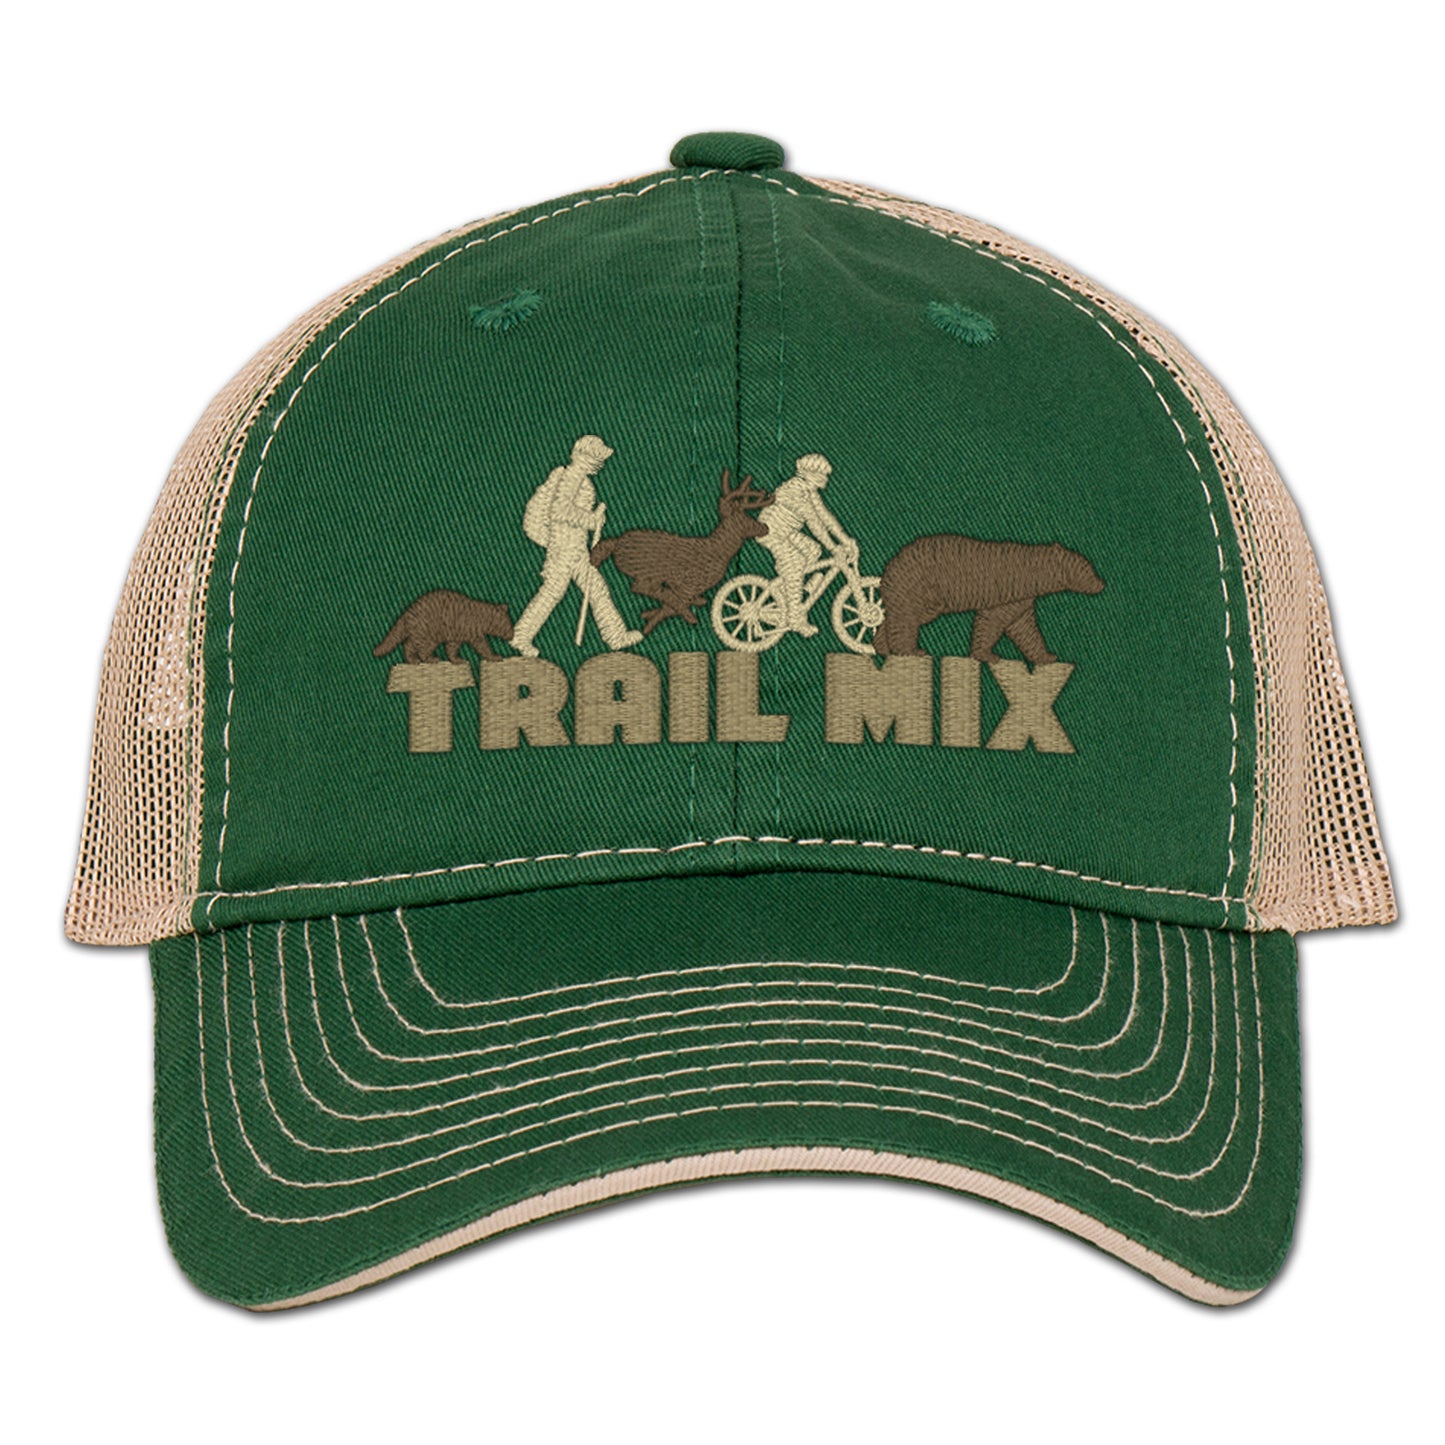 Trail Mix Trucker Hat